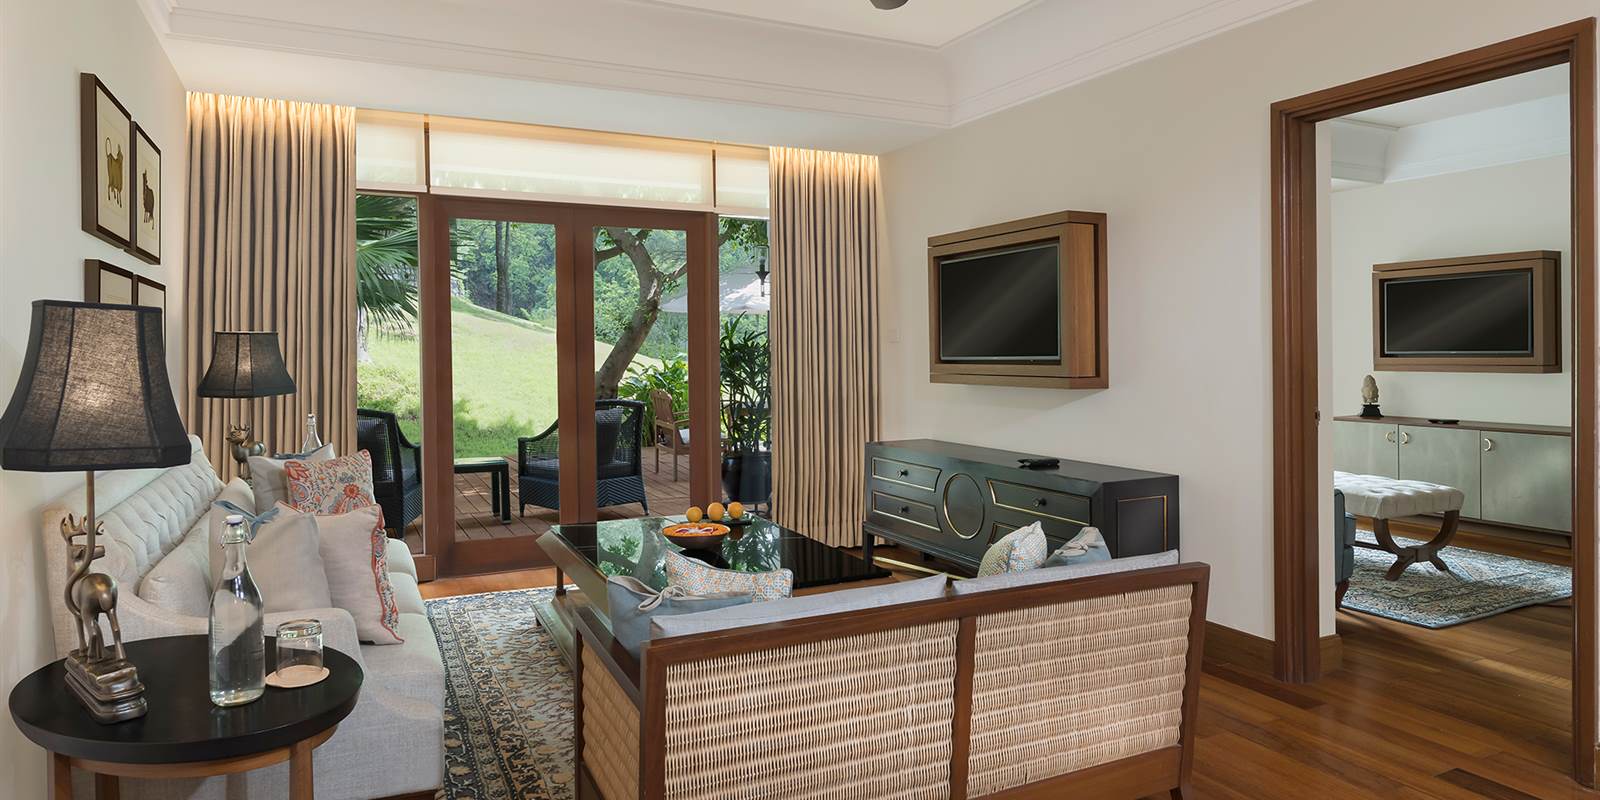 5 Star Resorts in India - Luxury Garden Suite Living Room